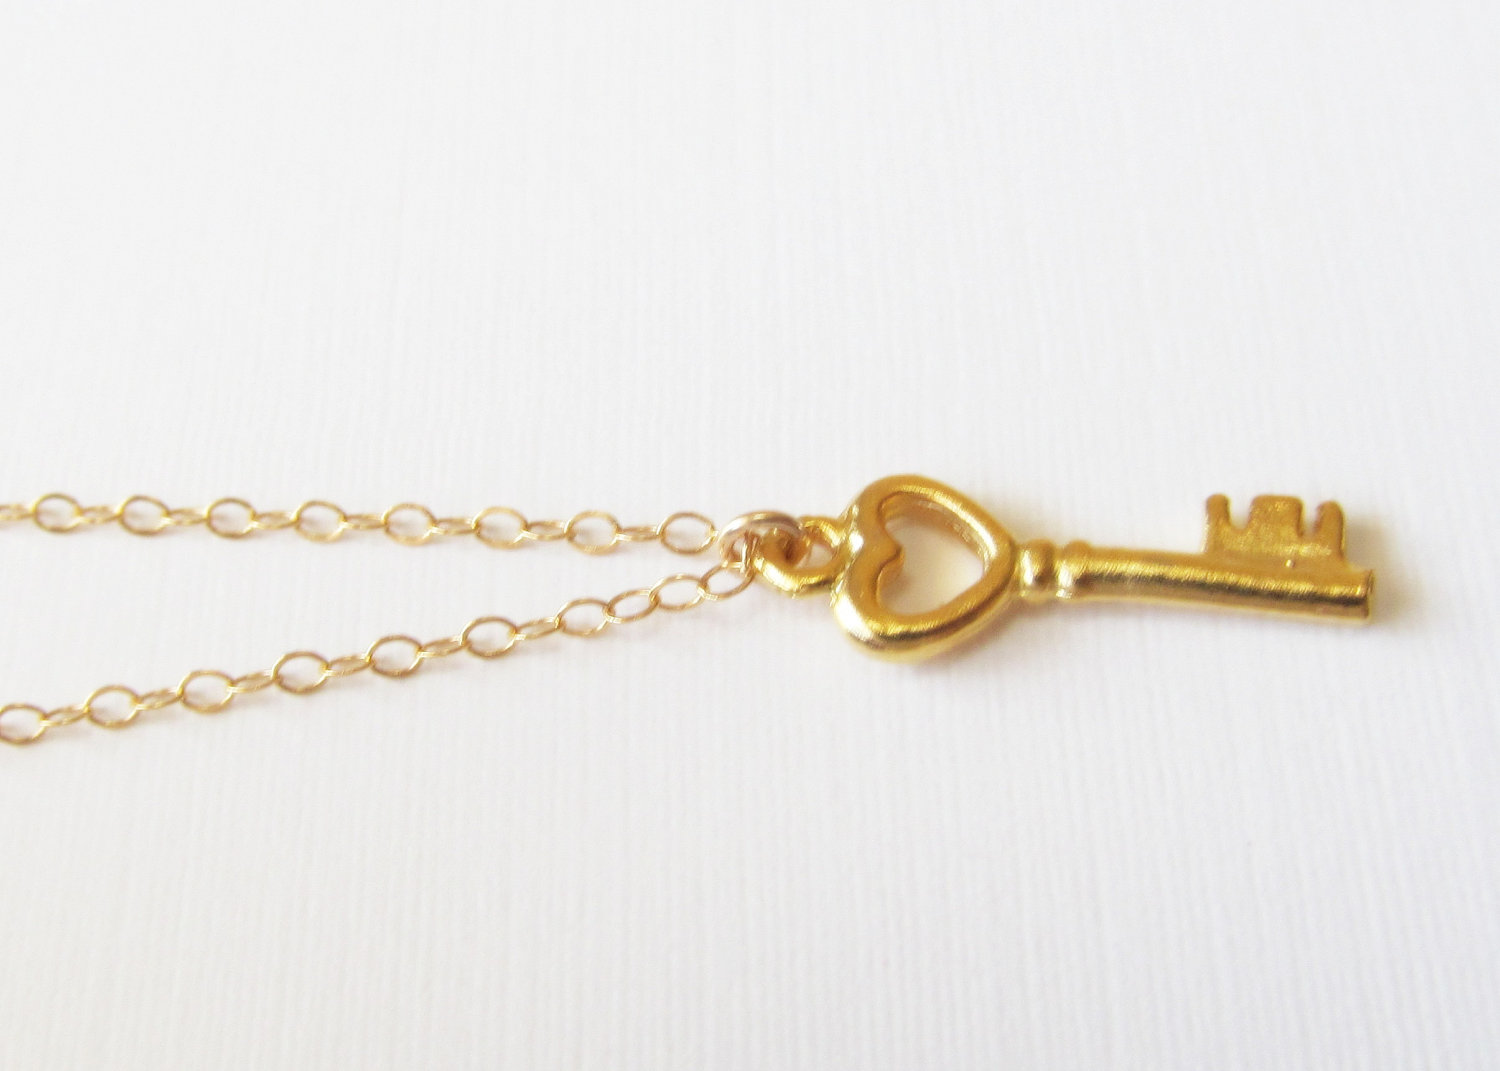 The key necklace - Gold Vermeil